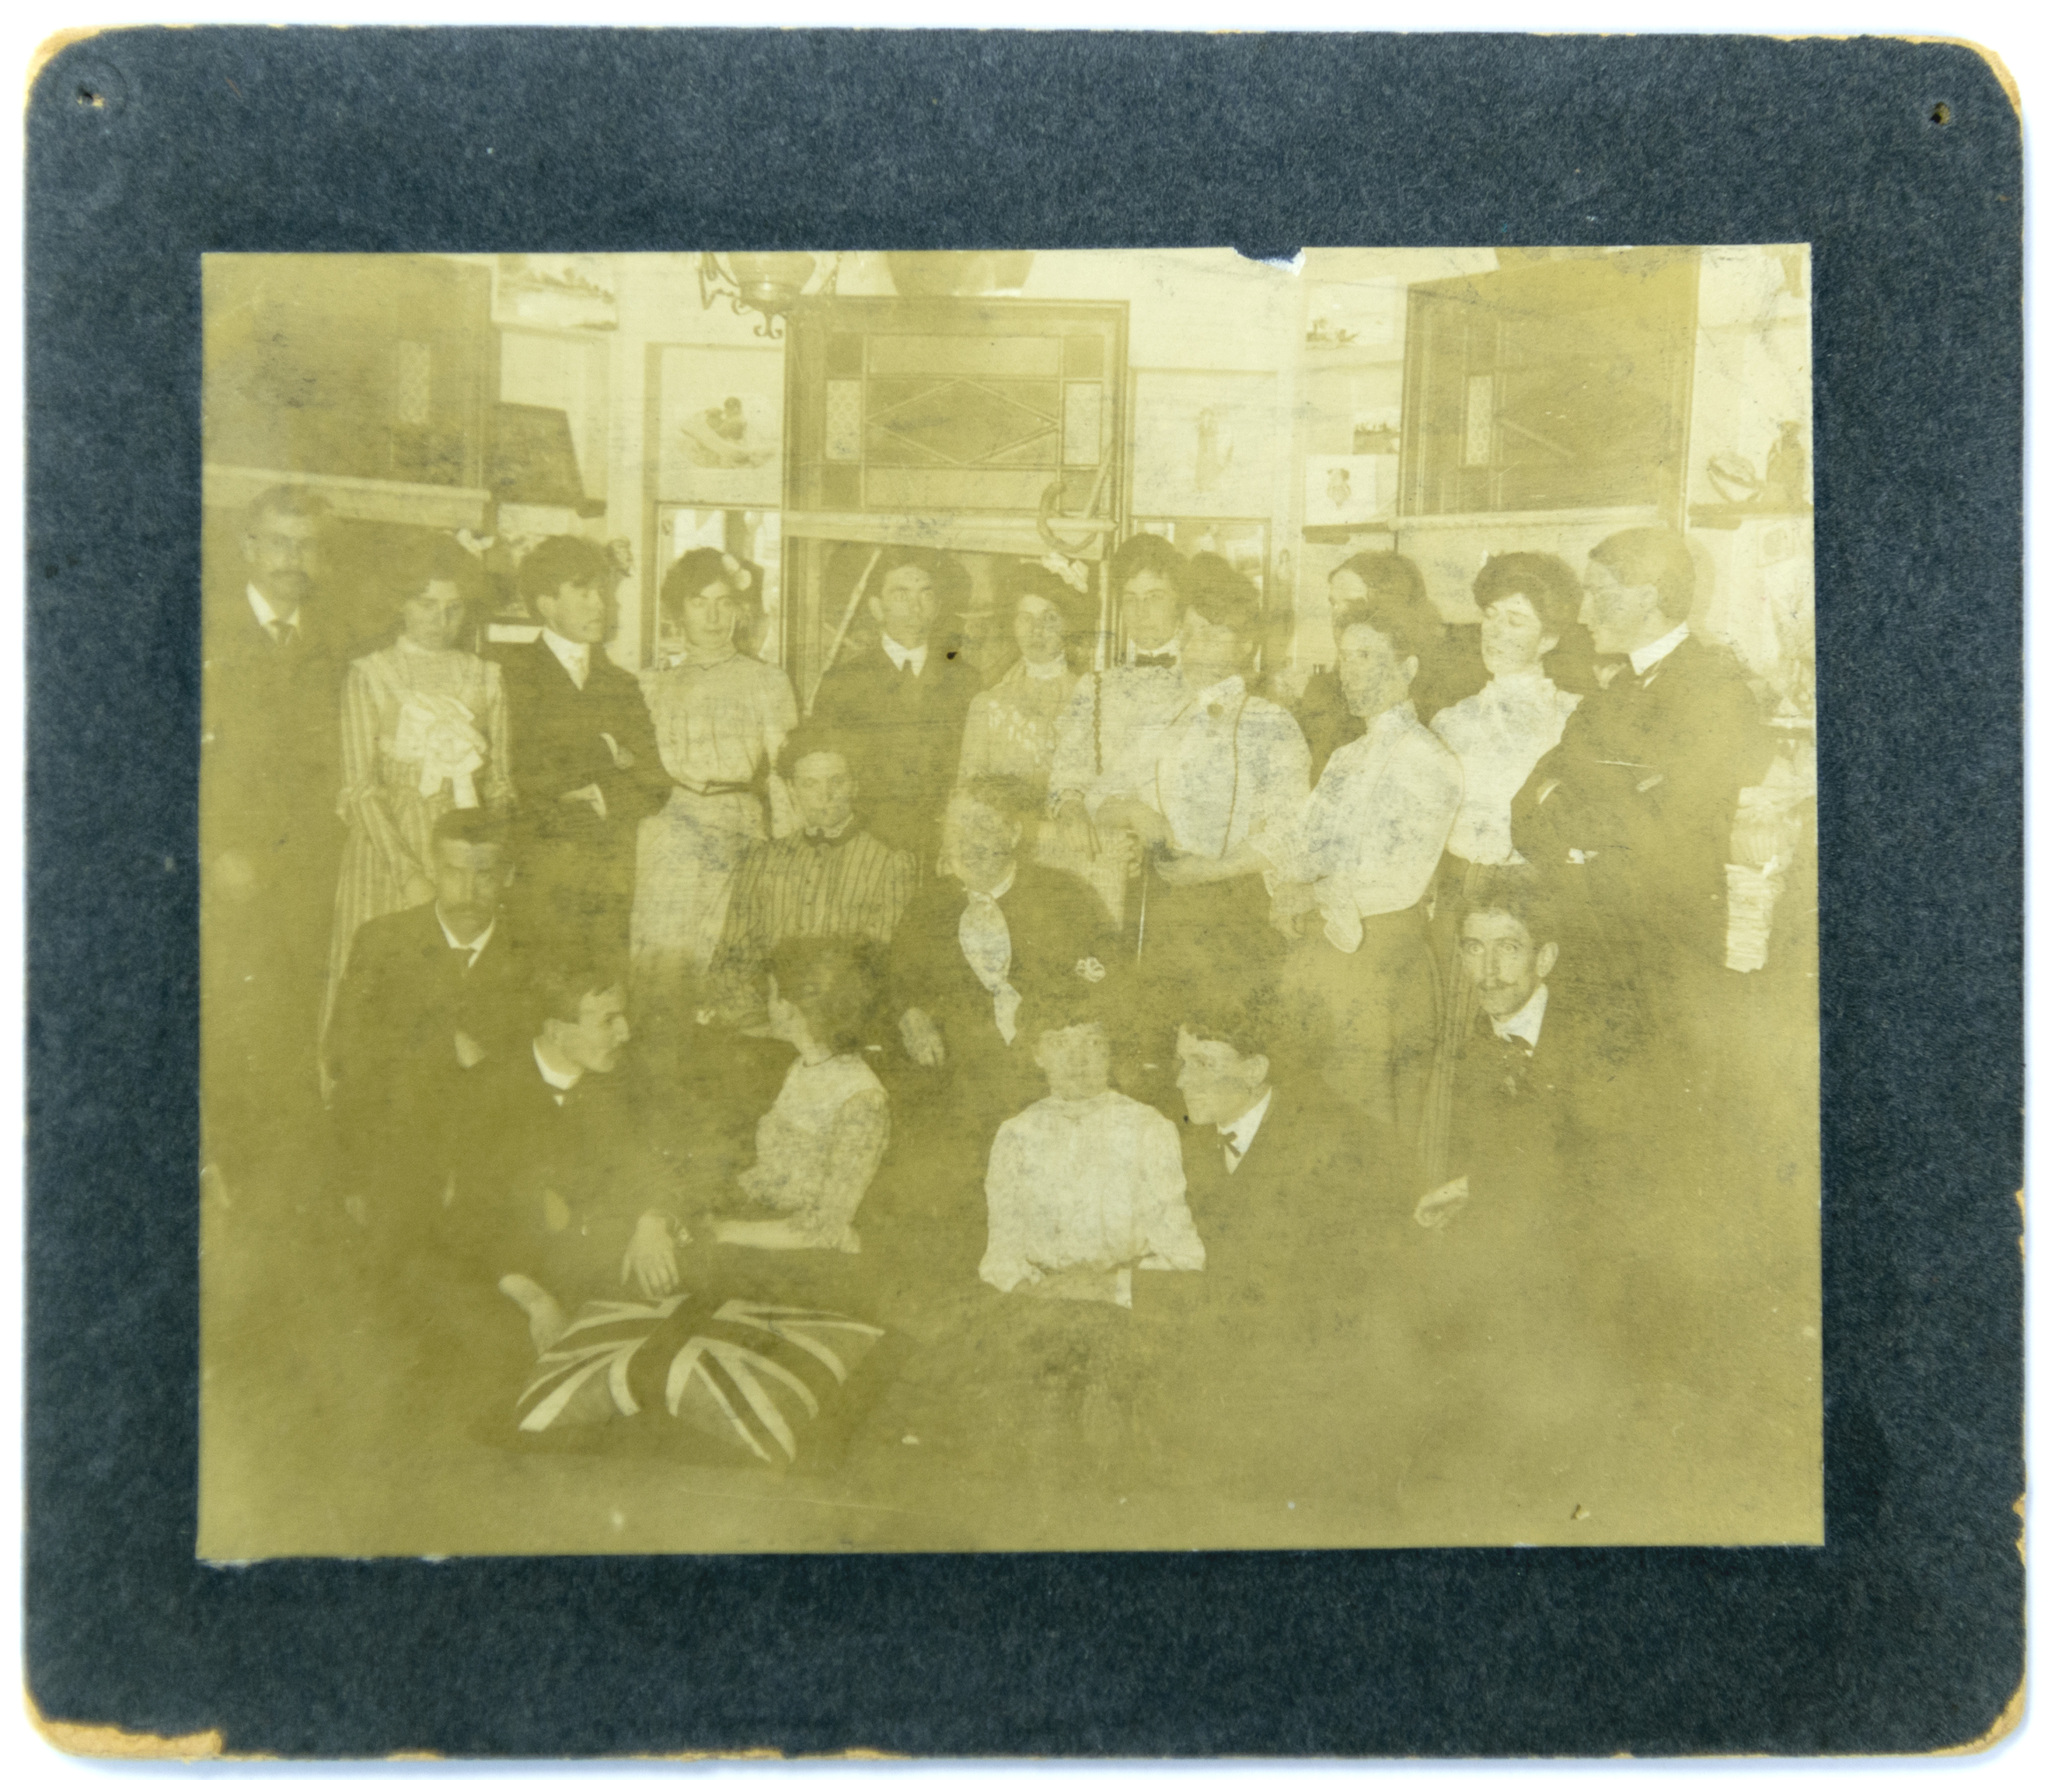 Image d’un large groupe de personnes en tenue de soirée rassemblées à l’intérieur d’une pièce avec des photos au mur.